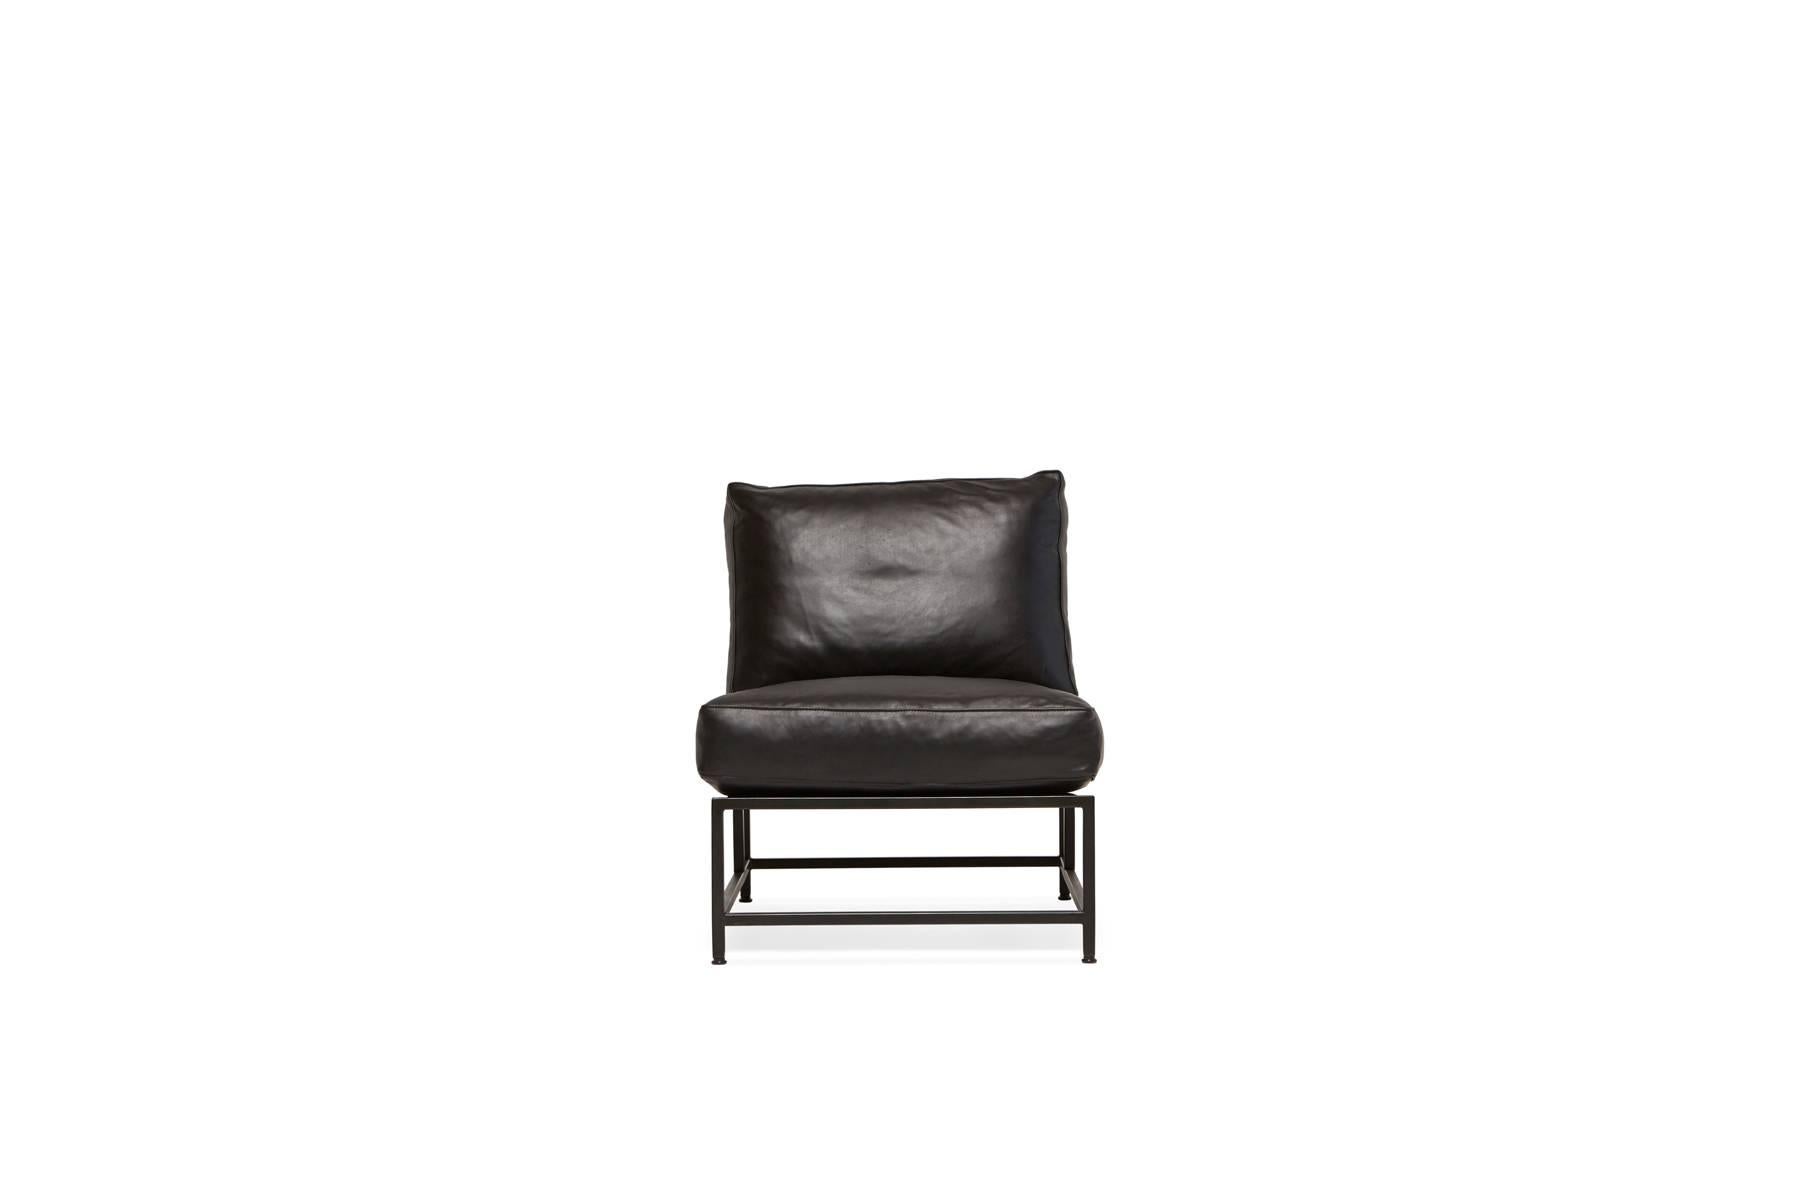 Dieser Stuhl aus unserer neuen Lederkollektion hat einen Rahmen aus geschwärztem Stahl, schwarze Gurtbänder und cognacfarbene Ledergurte sowie eine Polsterung aus weichem, schwarzem, pflanzlich gegerbtem Leder.

Dieser Artikel wird auf Bestellung